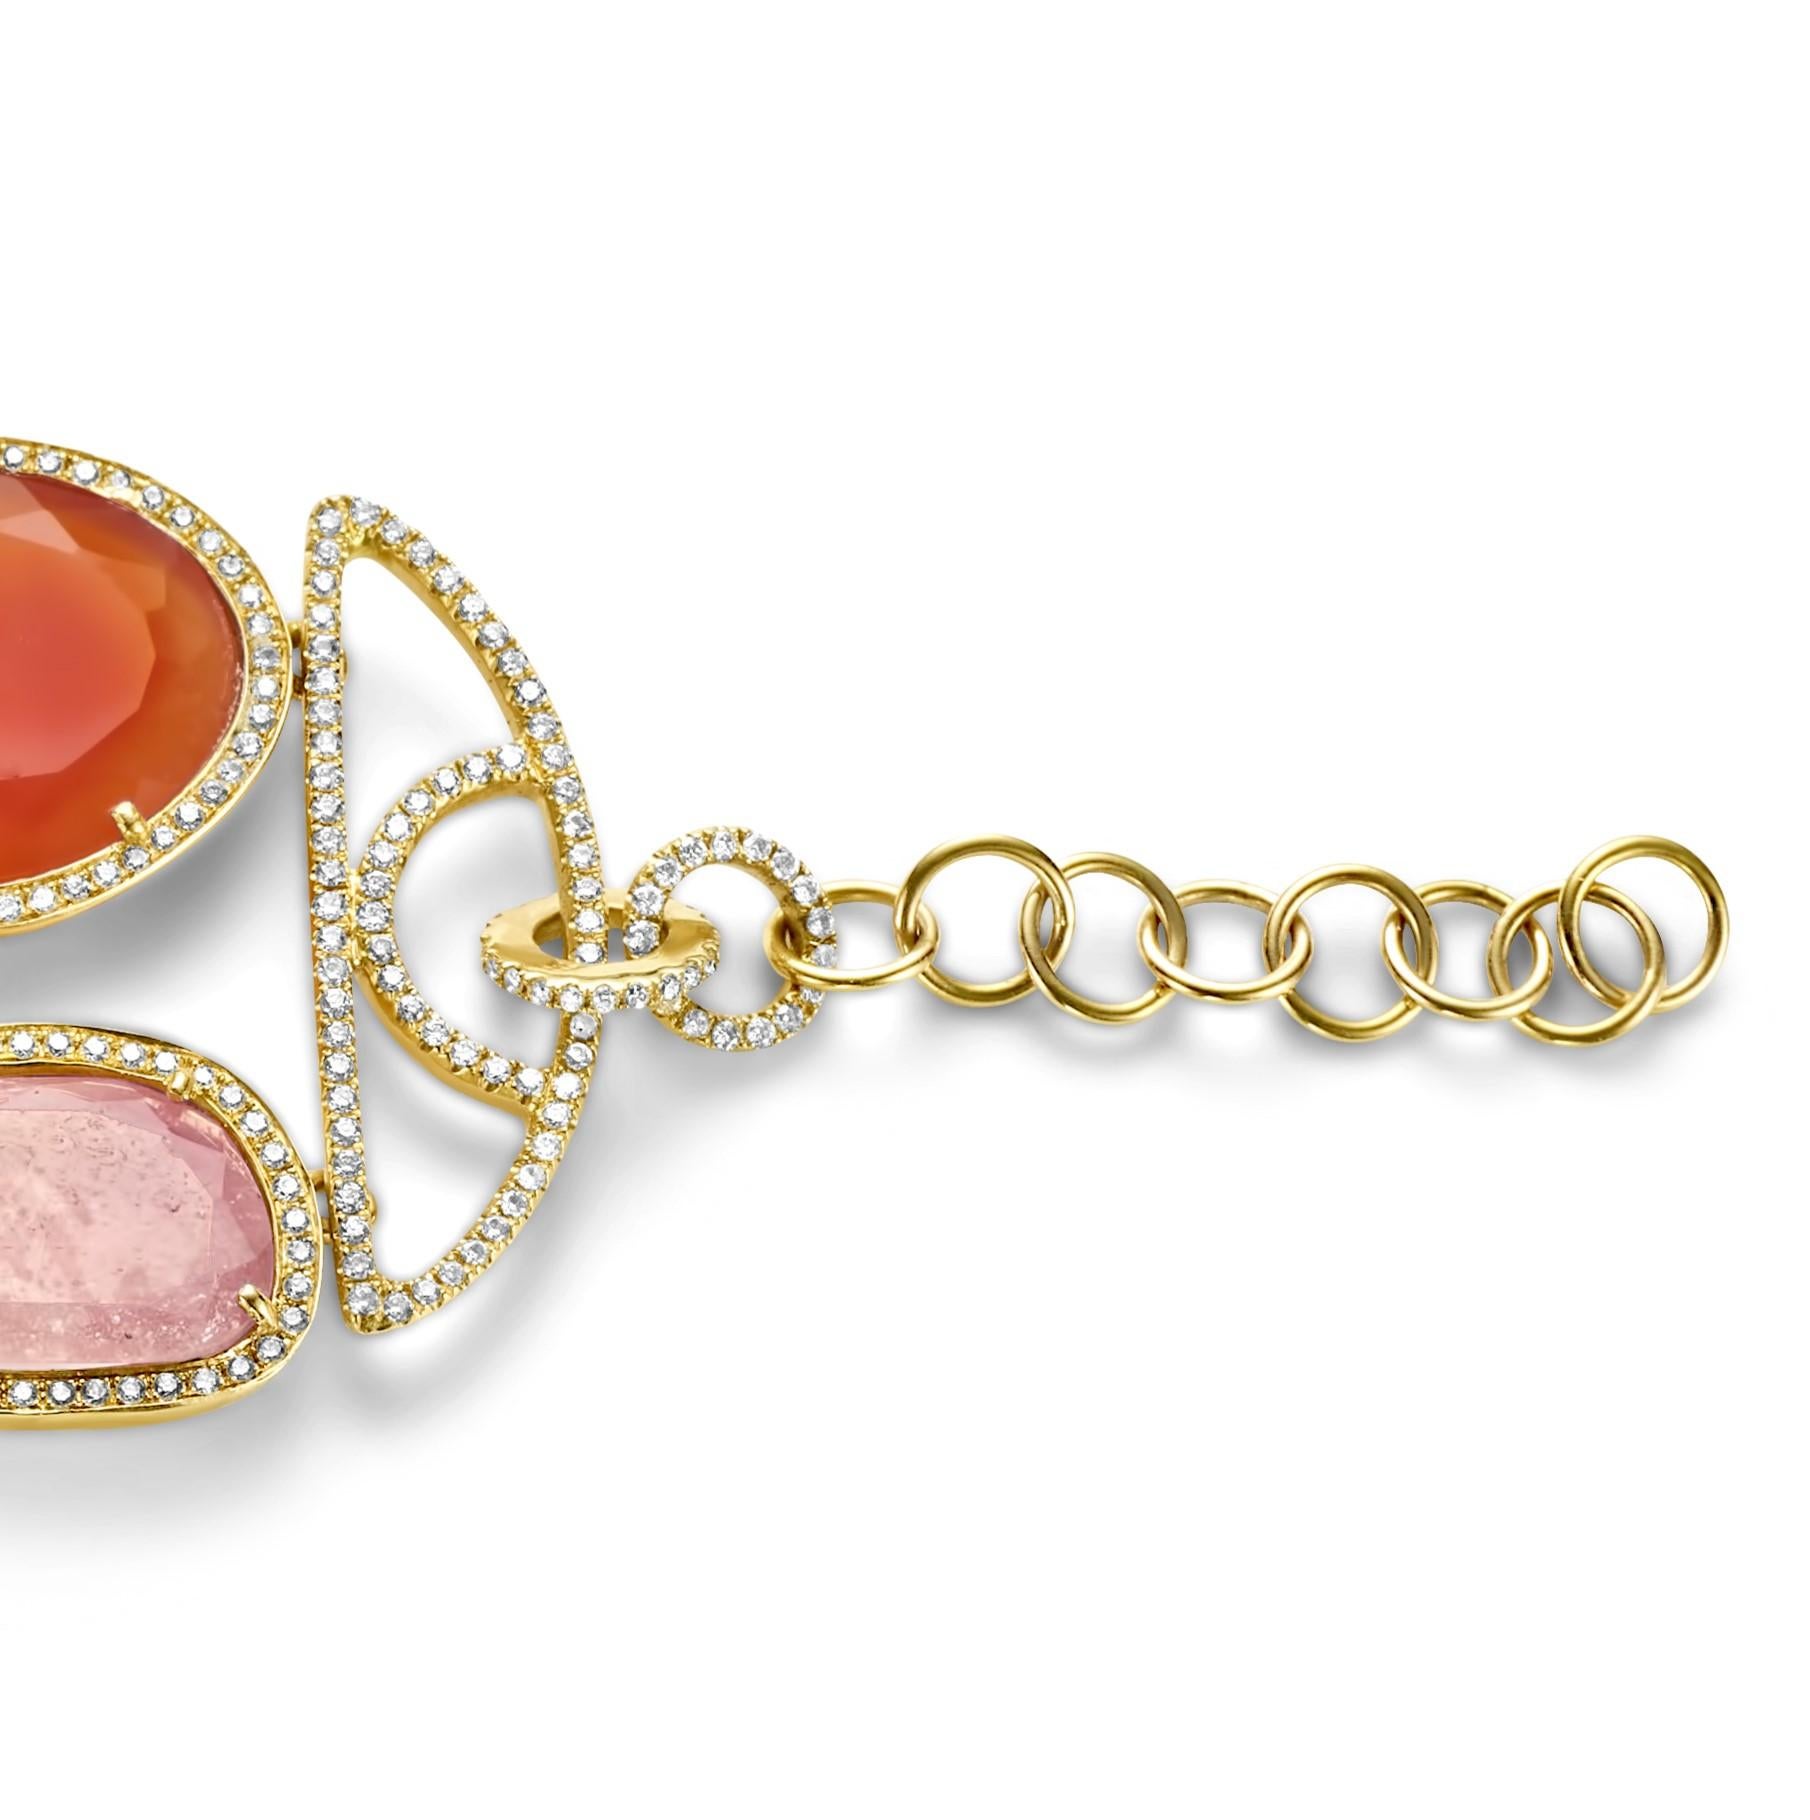 Brilliant Cut 18Kt Bracelet with 78.27ct. Rubellite & Semi Precious Stones, Pearls & Diamonds For Sale